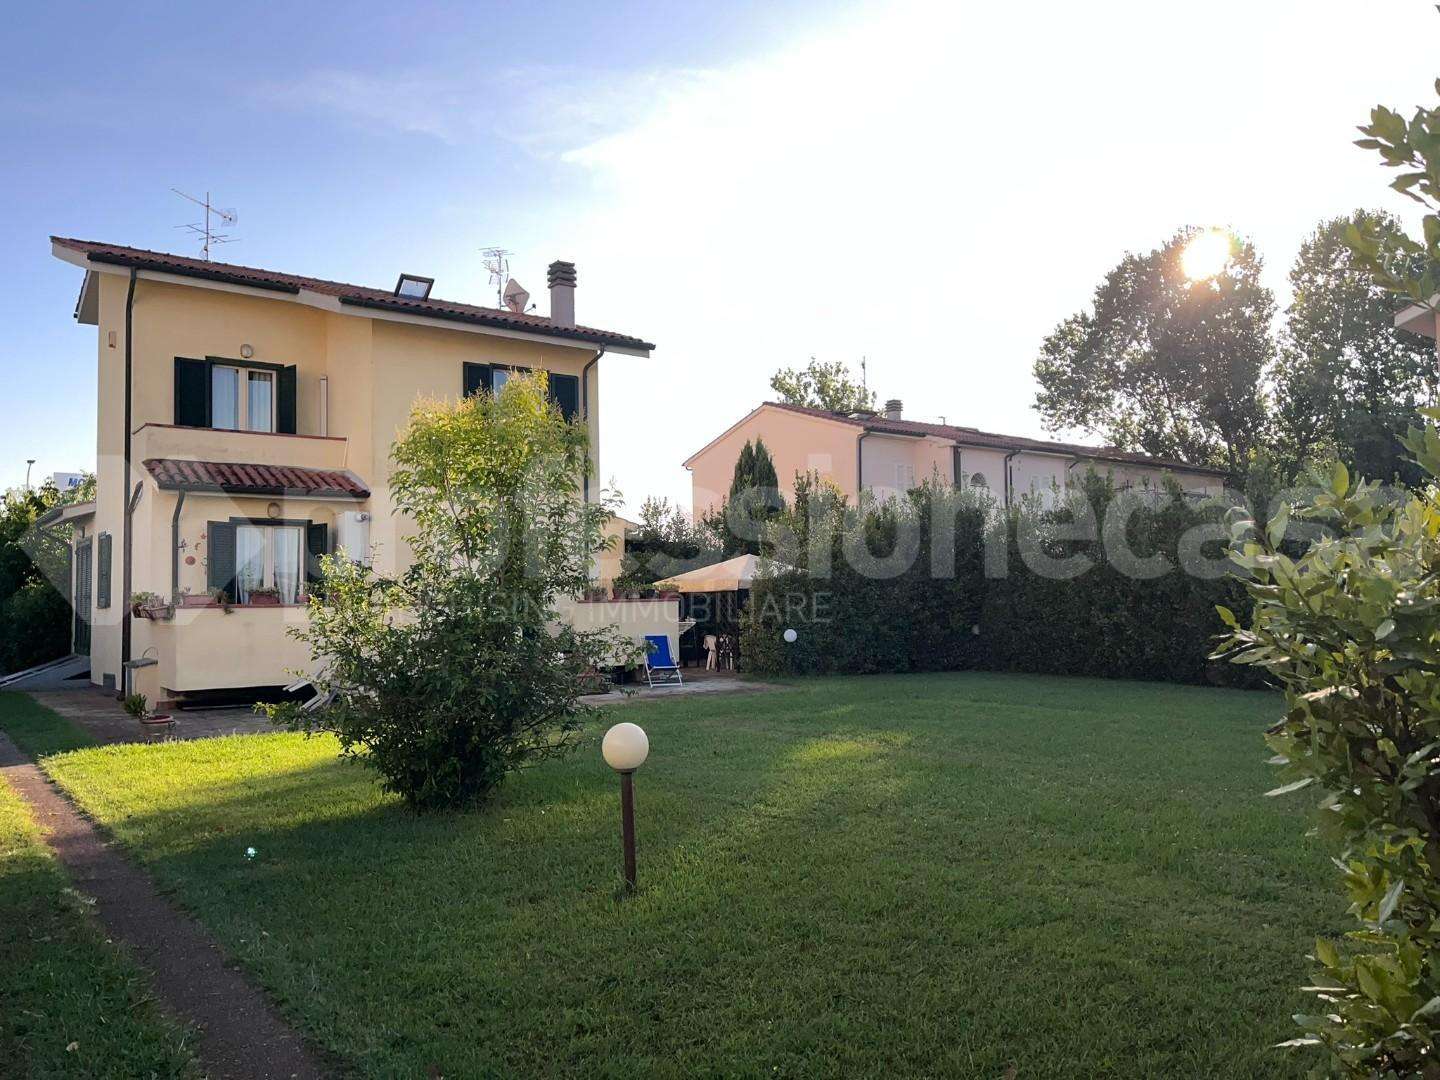 Casa Bi - Trifamiliare in Vendita a San Giuliano Terme Via delle Palanche Madonna dell 'Acqua, 39